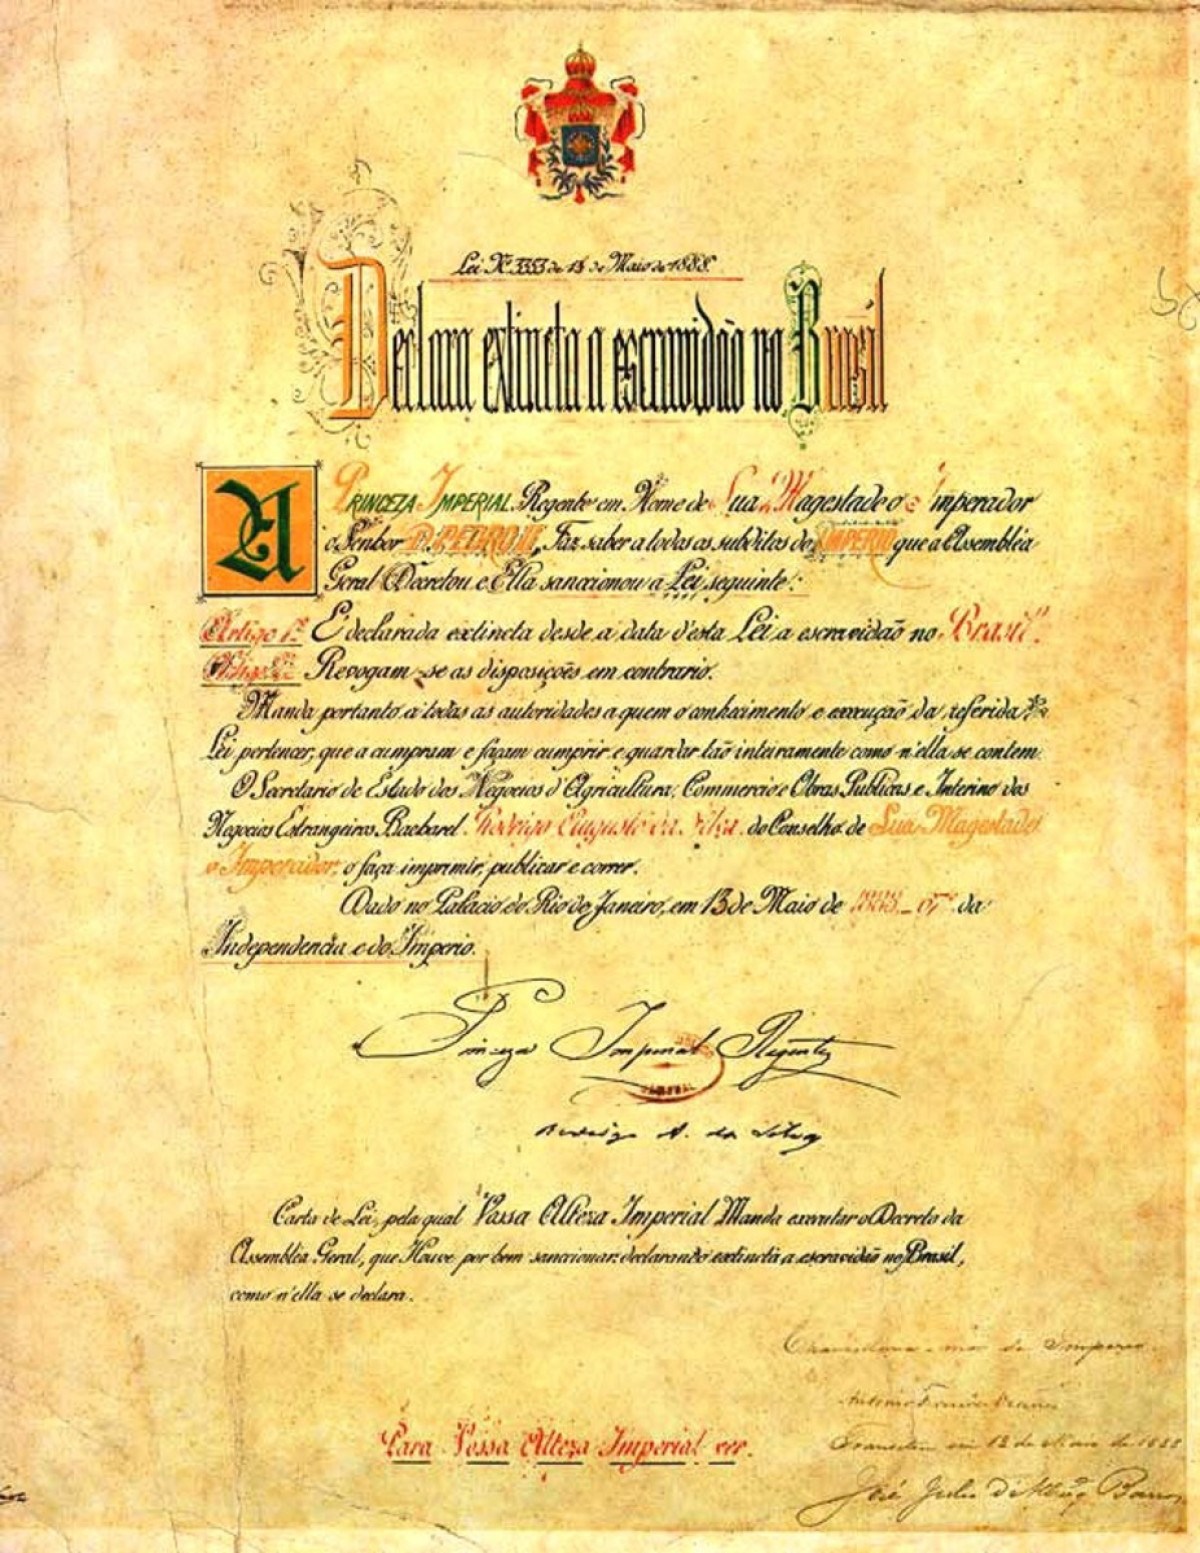 Cópia da lei original assinada em 1888 pela princesa Isabel.